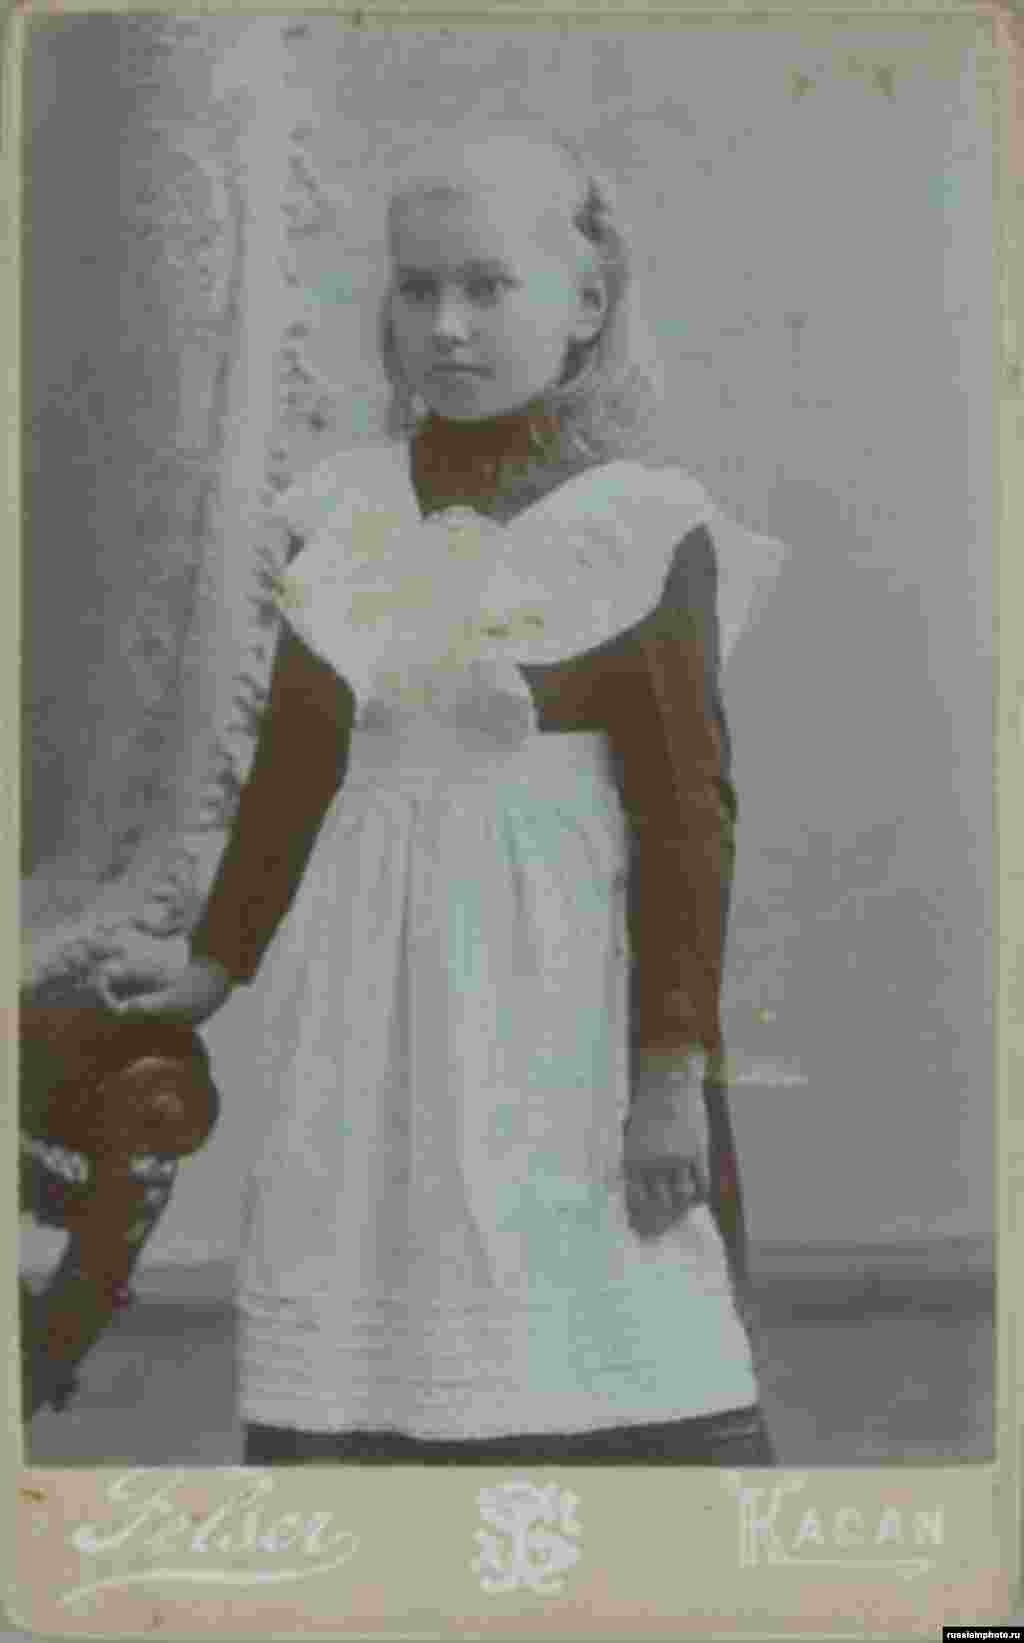 Қыз баланың портреті. Қазан қаласы, 1900 жыл.